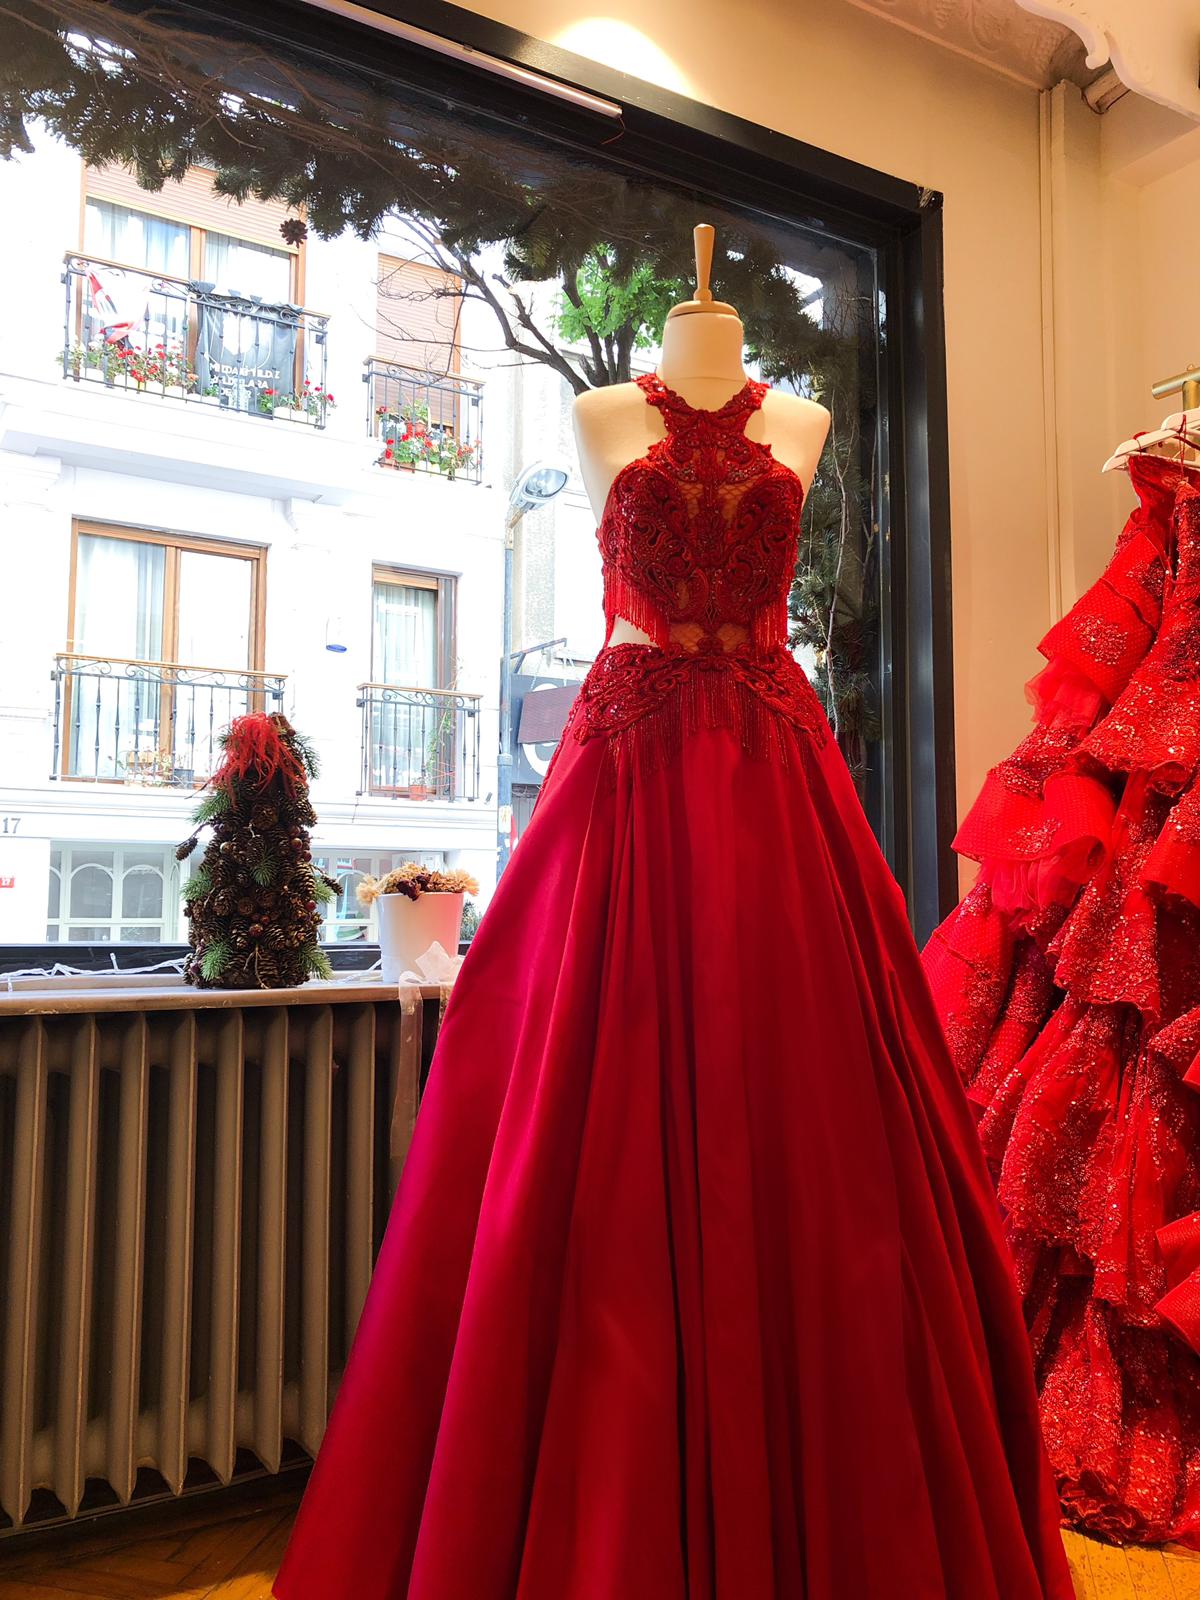 Parlak fuar maliye  Kırmızı Kına Elbisesi Kiralık - Elbise Kirala - Kırmızı Kına Elbisesi